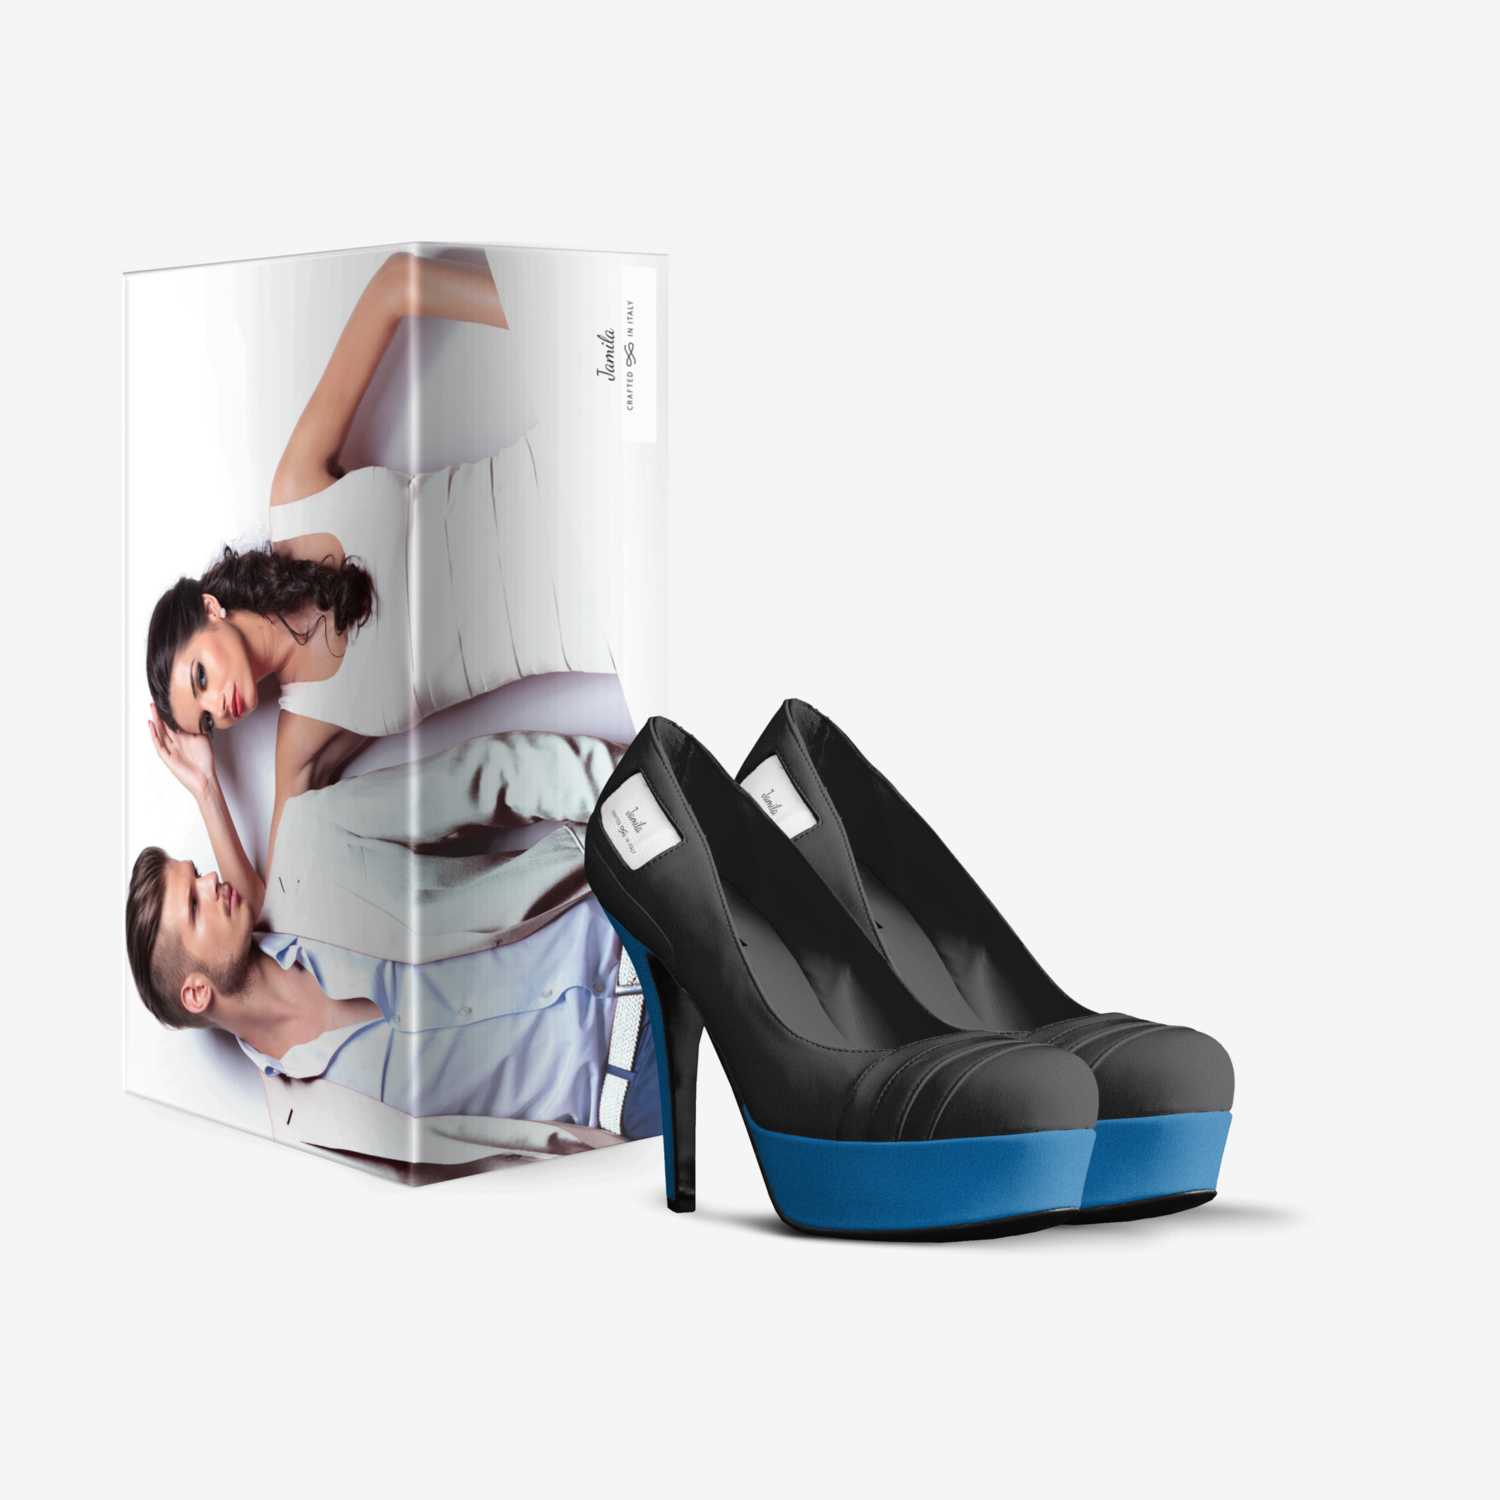 Jamila custom made in Italy shoes by Jamila Vereen | Box view